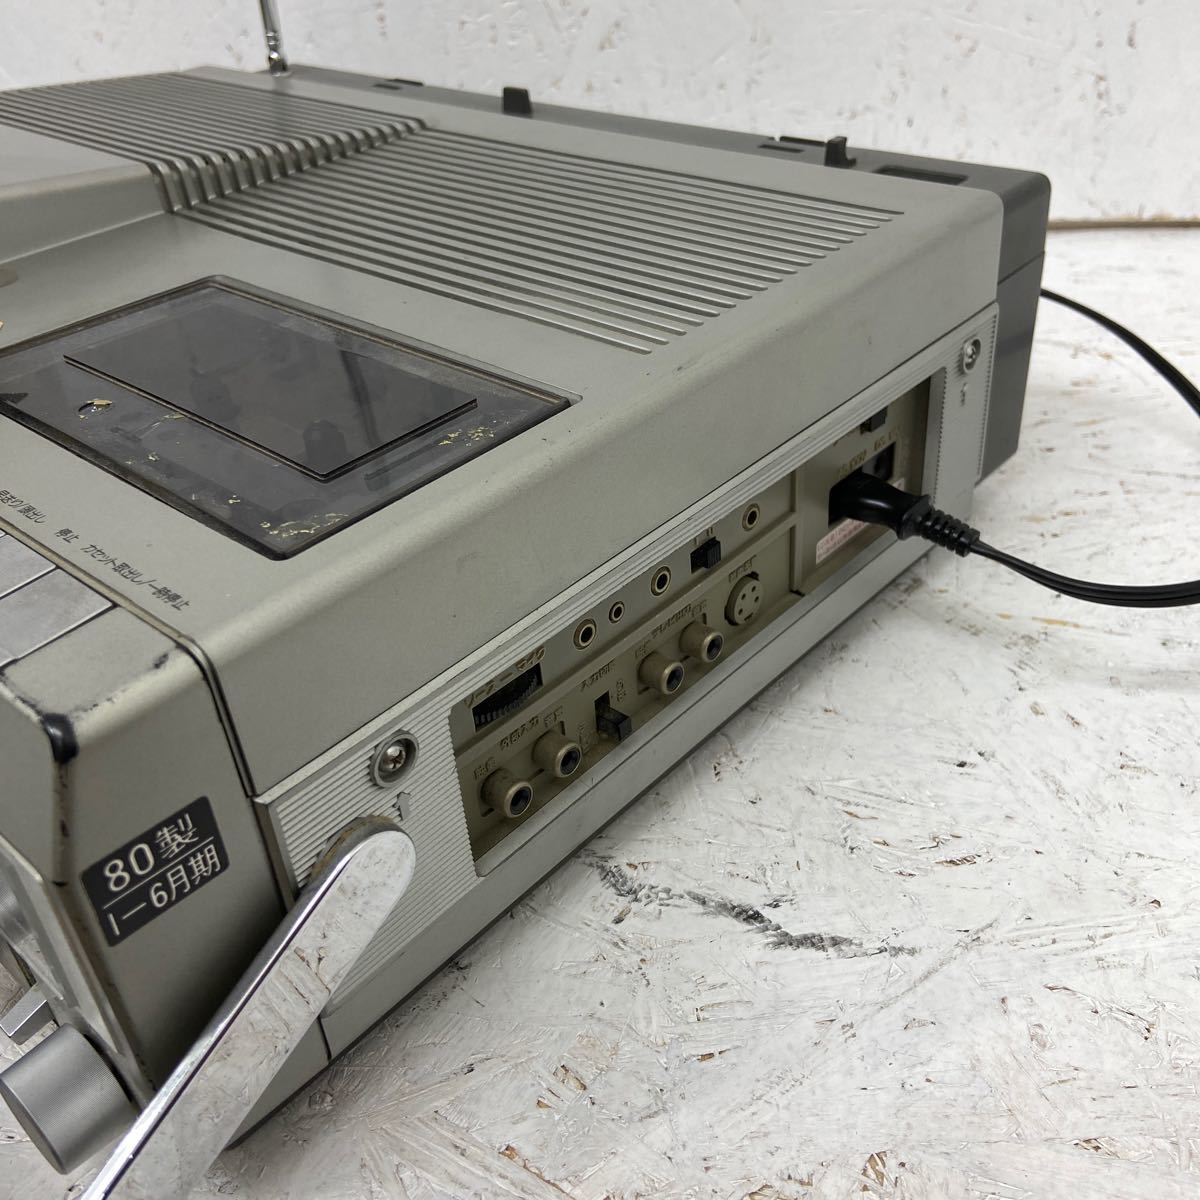 2 National カラーテレビ-ラジオ-カセット panacolor TH6-X30